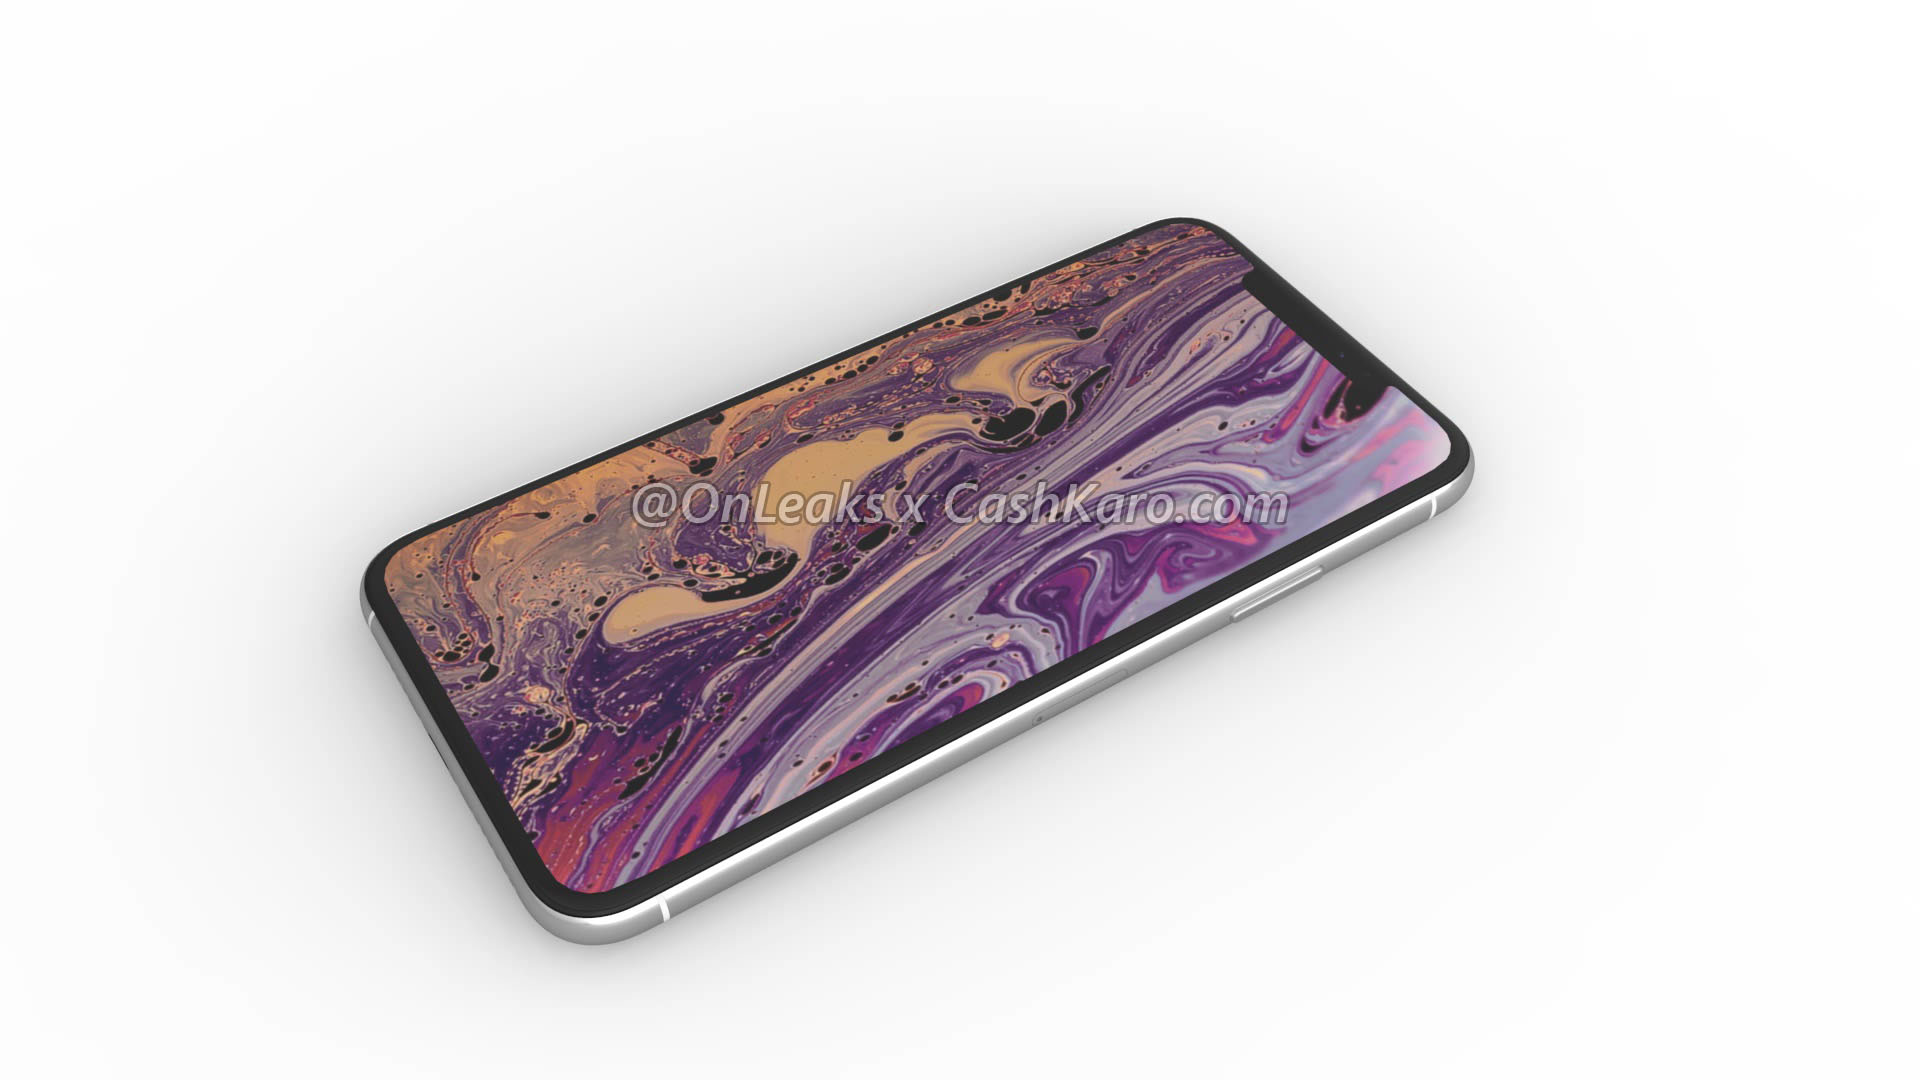 Apple iPhone 2019 Max rendery Onleaks plotki przecieki kiedy premiera